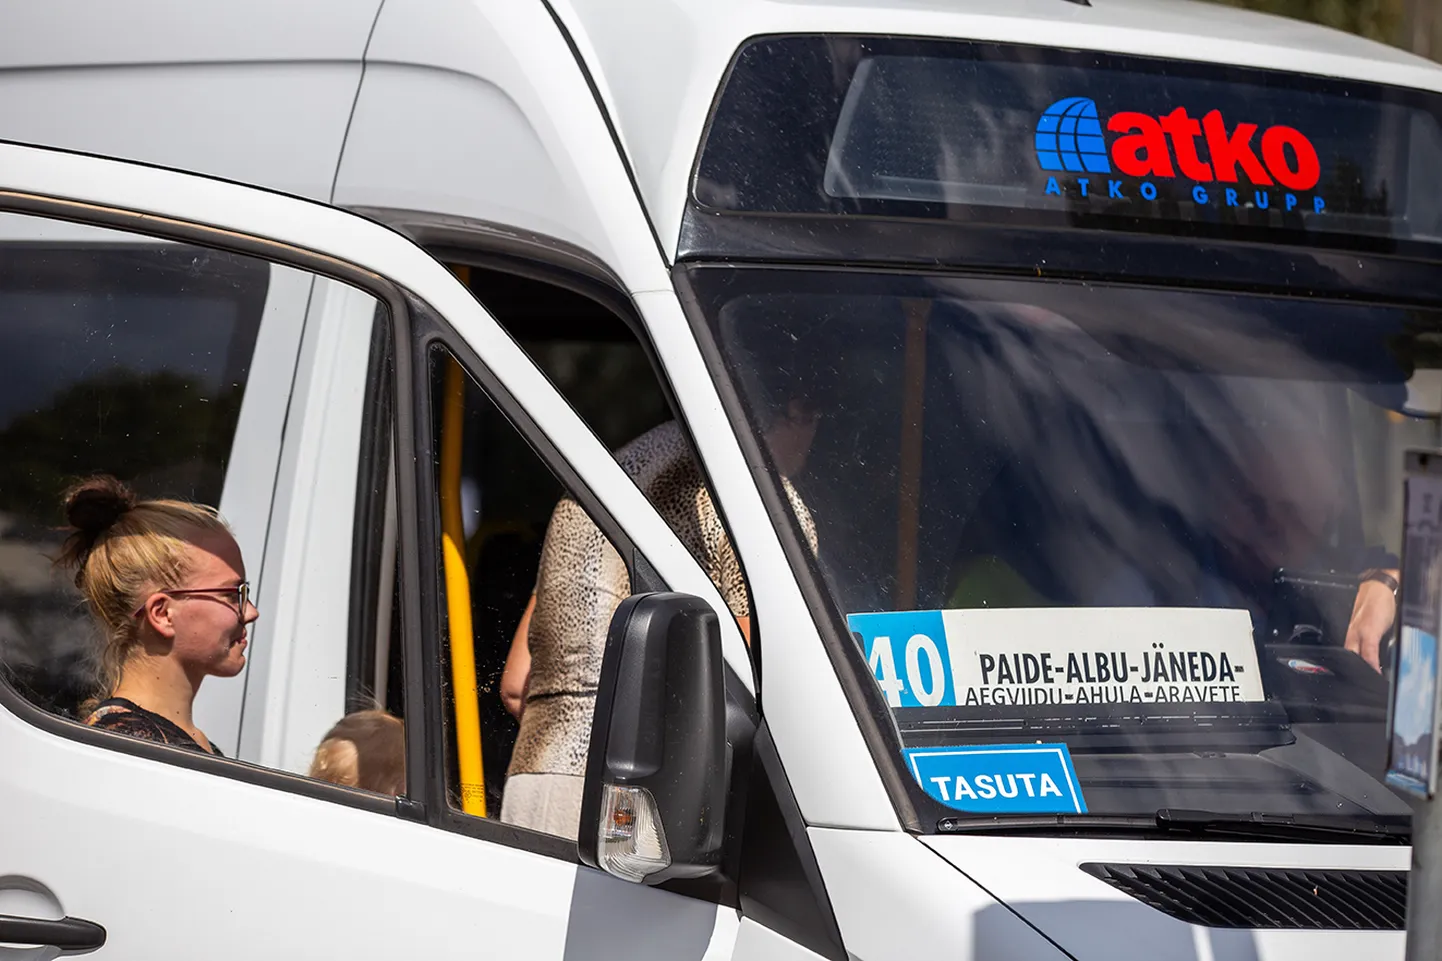 Esimene tasuta ühistranspordi kuu tõi Järvamaa maakonnaliinide bussidesse rohkelt uusi sõitjaid. Nüüd on bussisõit taas tasuline.